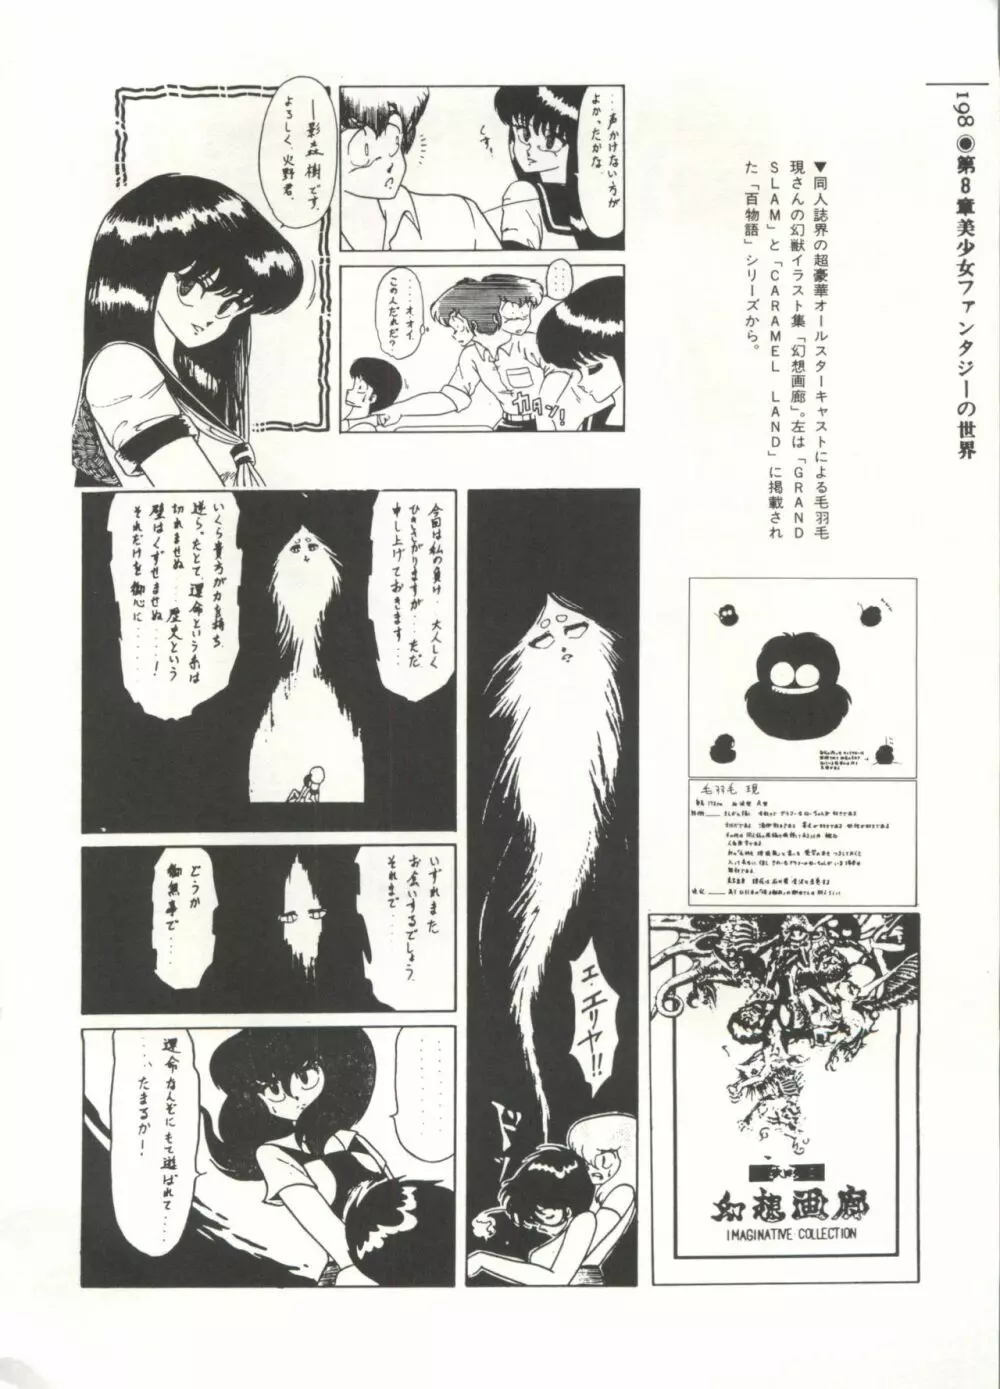 [Anthology] 美少女症候群(2) Lolita syndrome (よろず) 201ページ